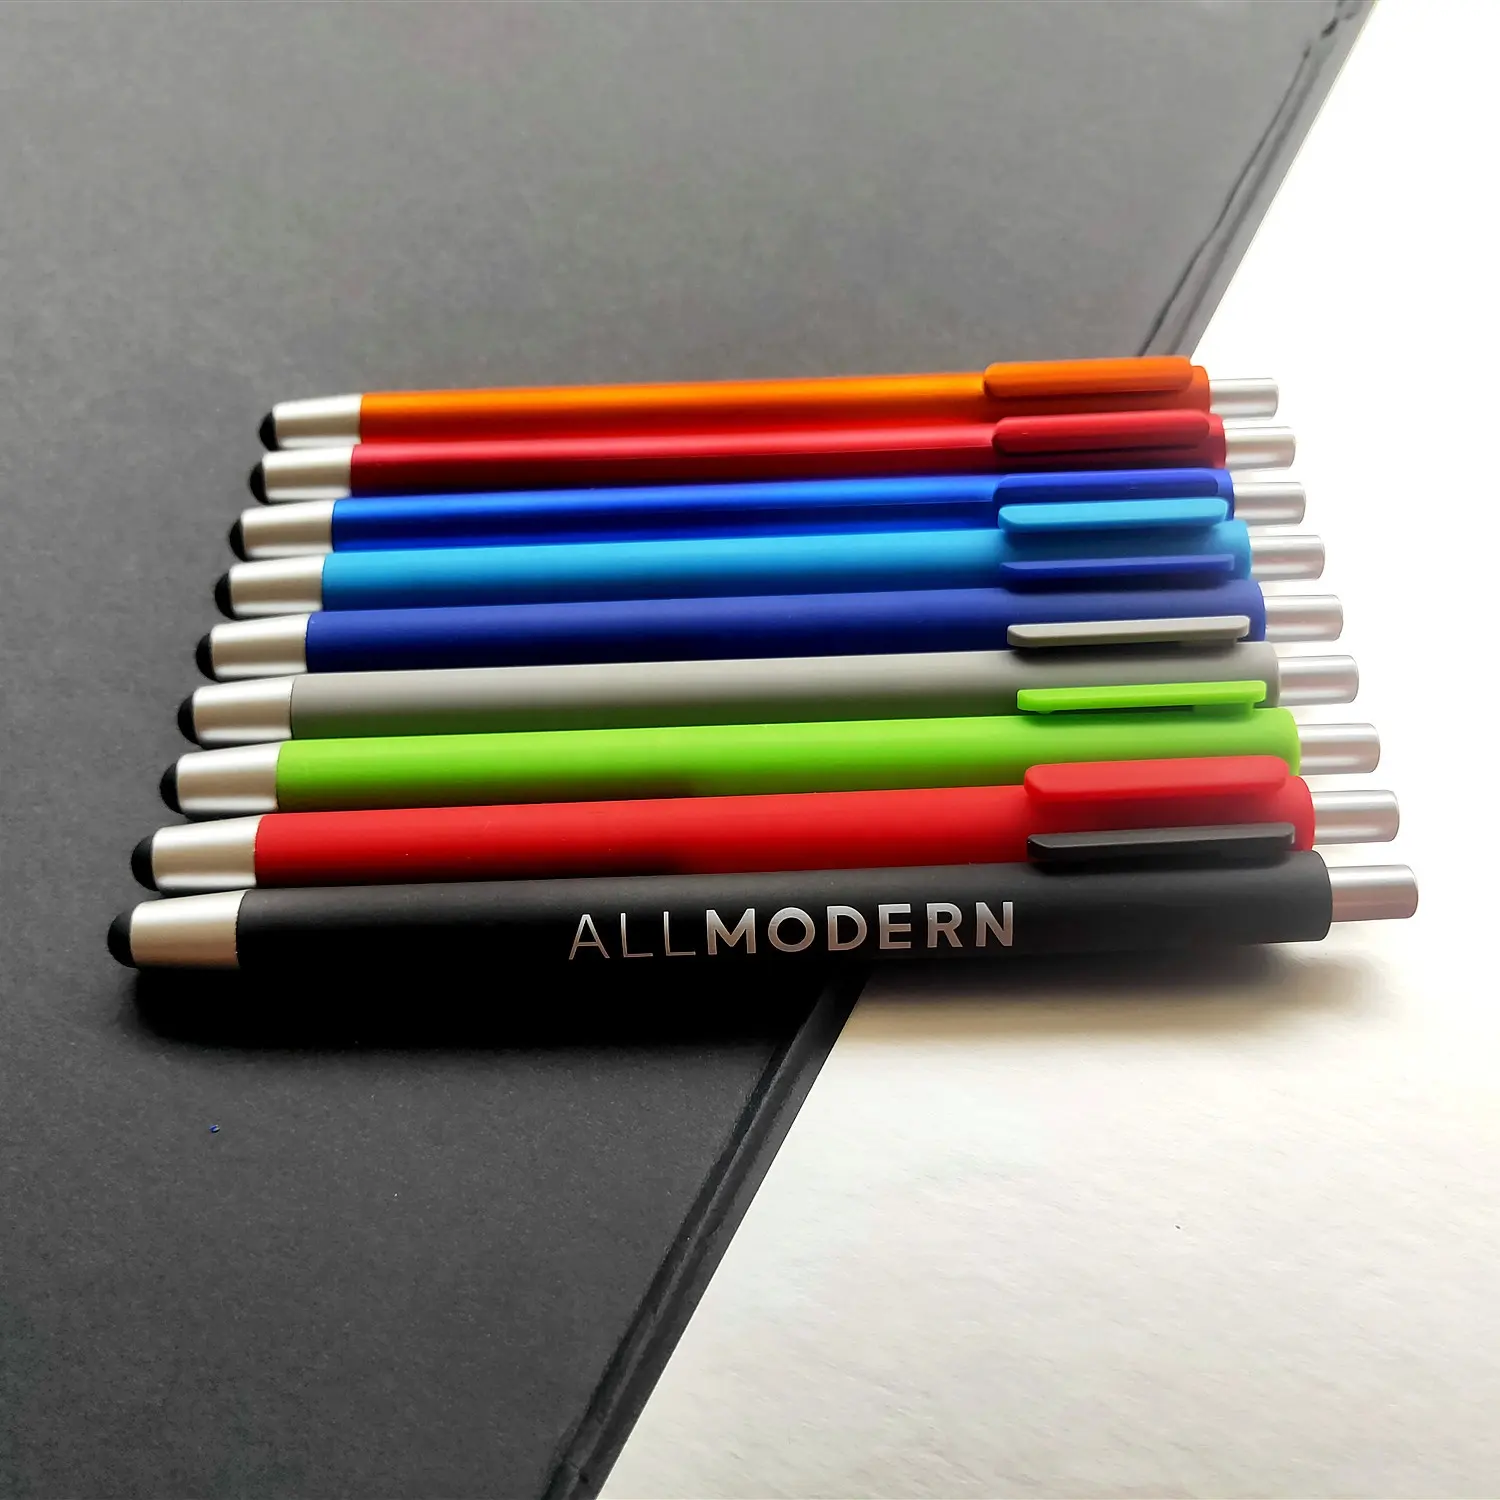 Stylo caneta de esferográfica personalizada, caneta de esferográfica personalizada para uso e jogar com logotipo vip